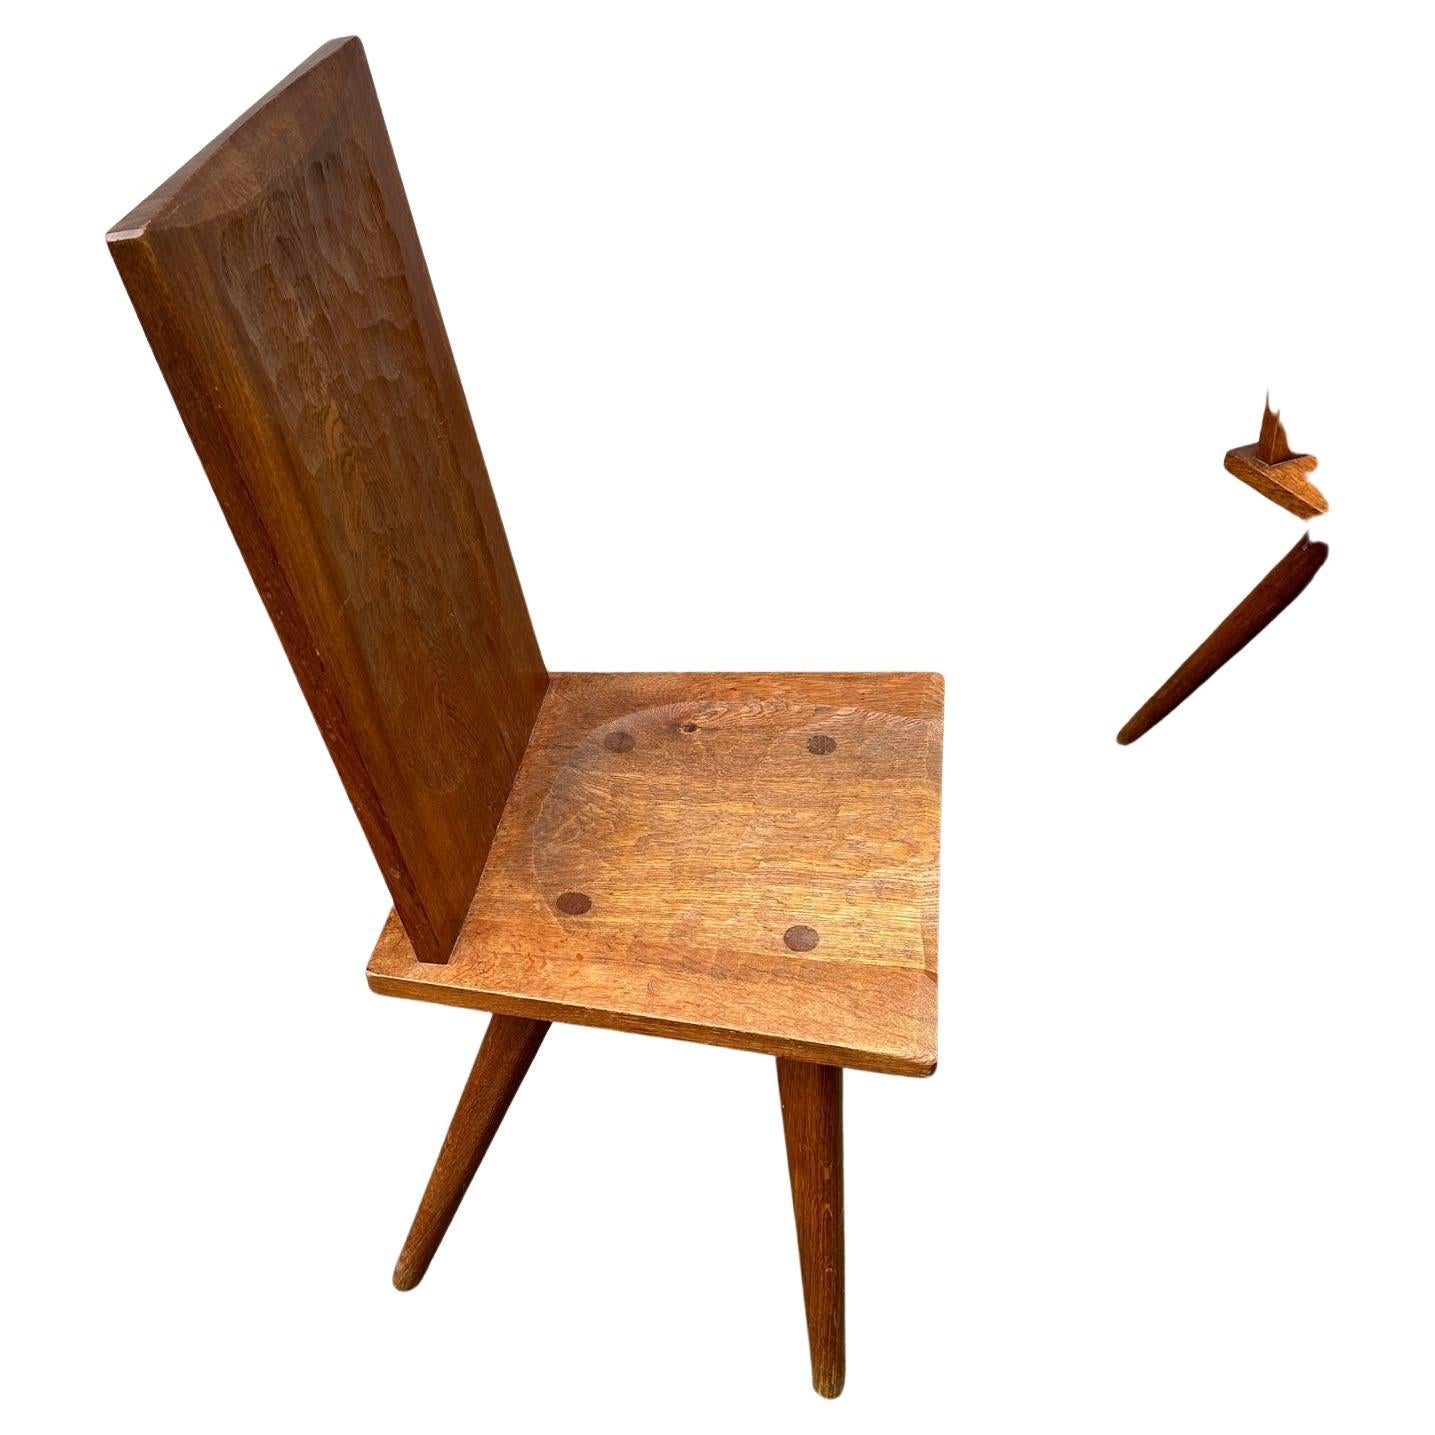 Suite de six chaises en chêne sculpté à haut dossier et assise carrée reposant sur quatre pieds profilés. Signées «Marolles». Vers 1950